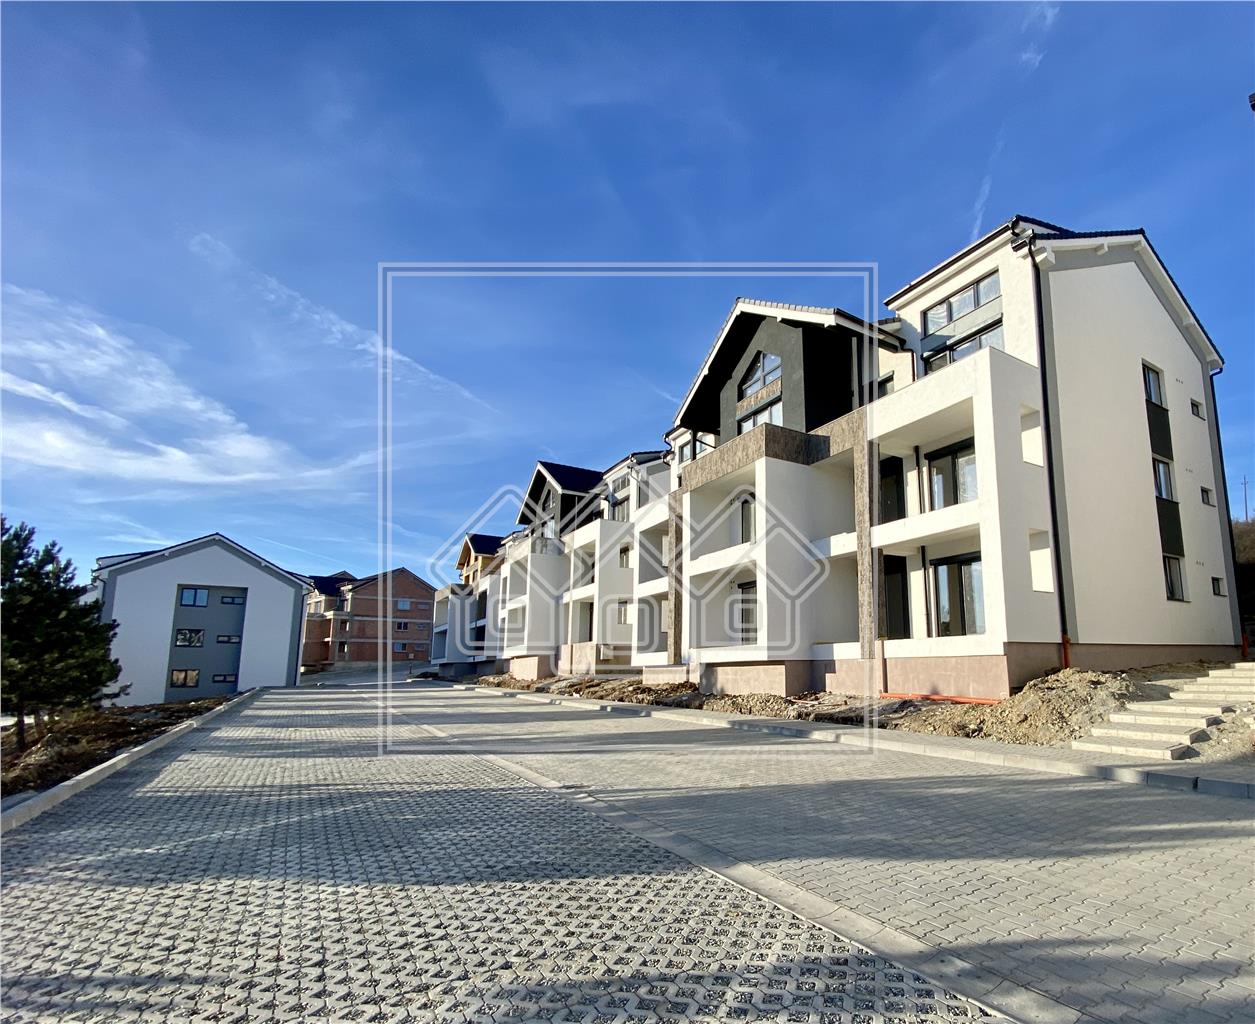 2-Zimmer-Wohnung zu verkaufen in Sibiu - Cristian - Nutzflache